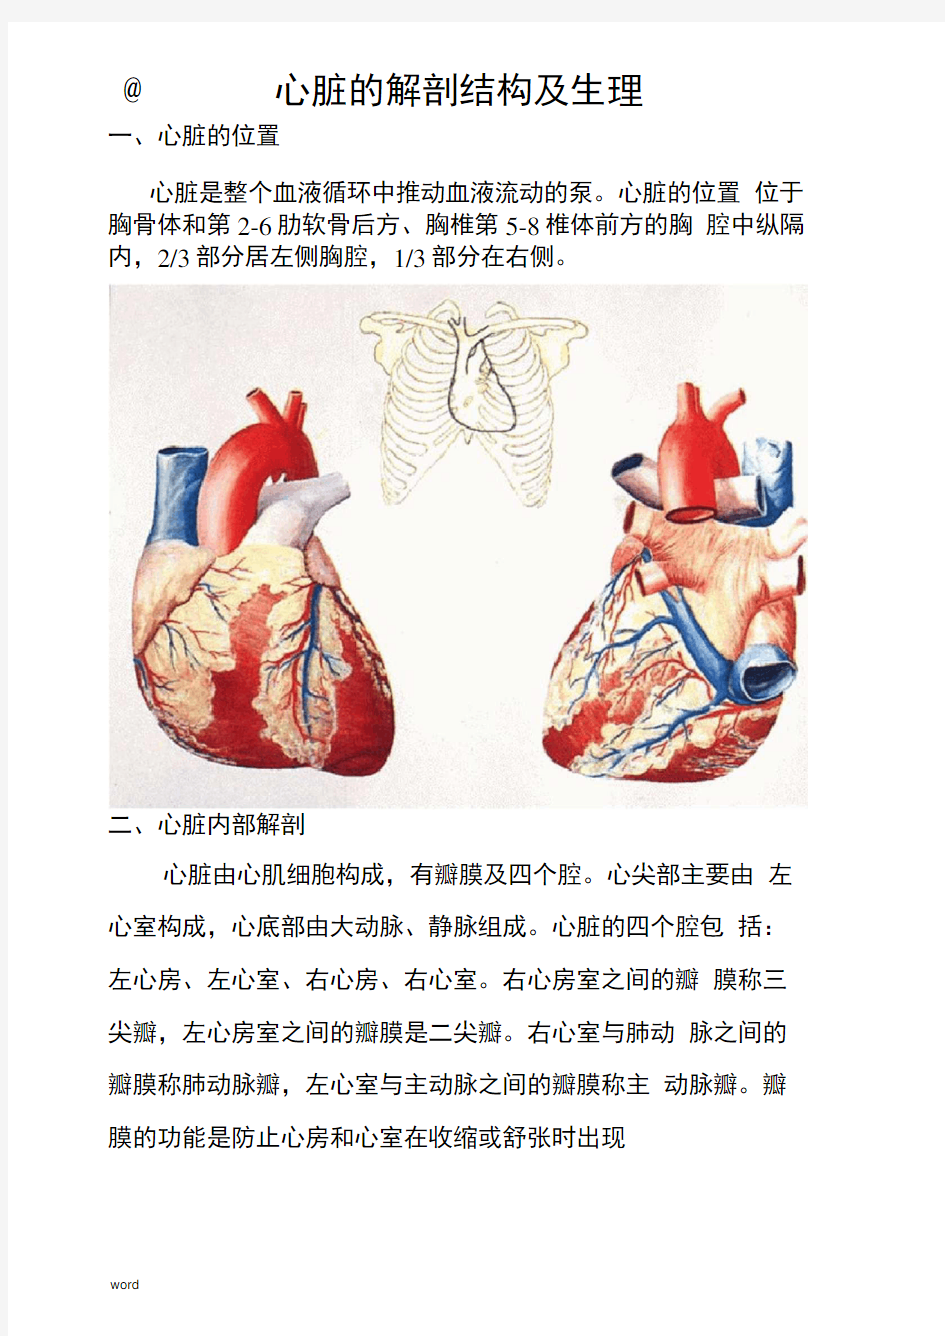 心脏的解剖结构及生理(含彩图)